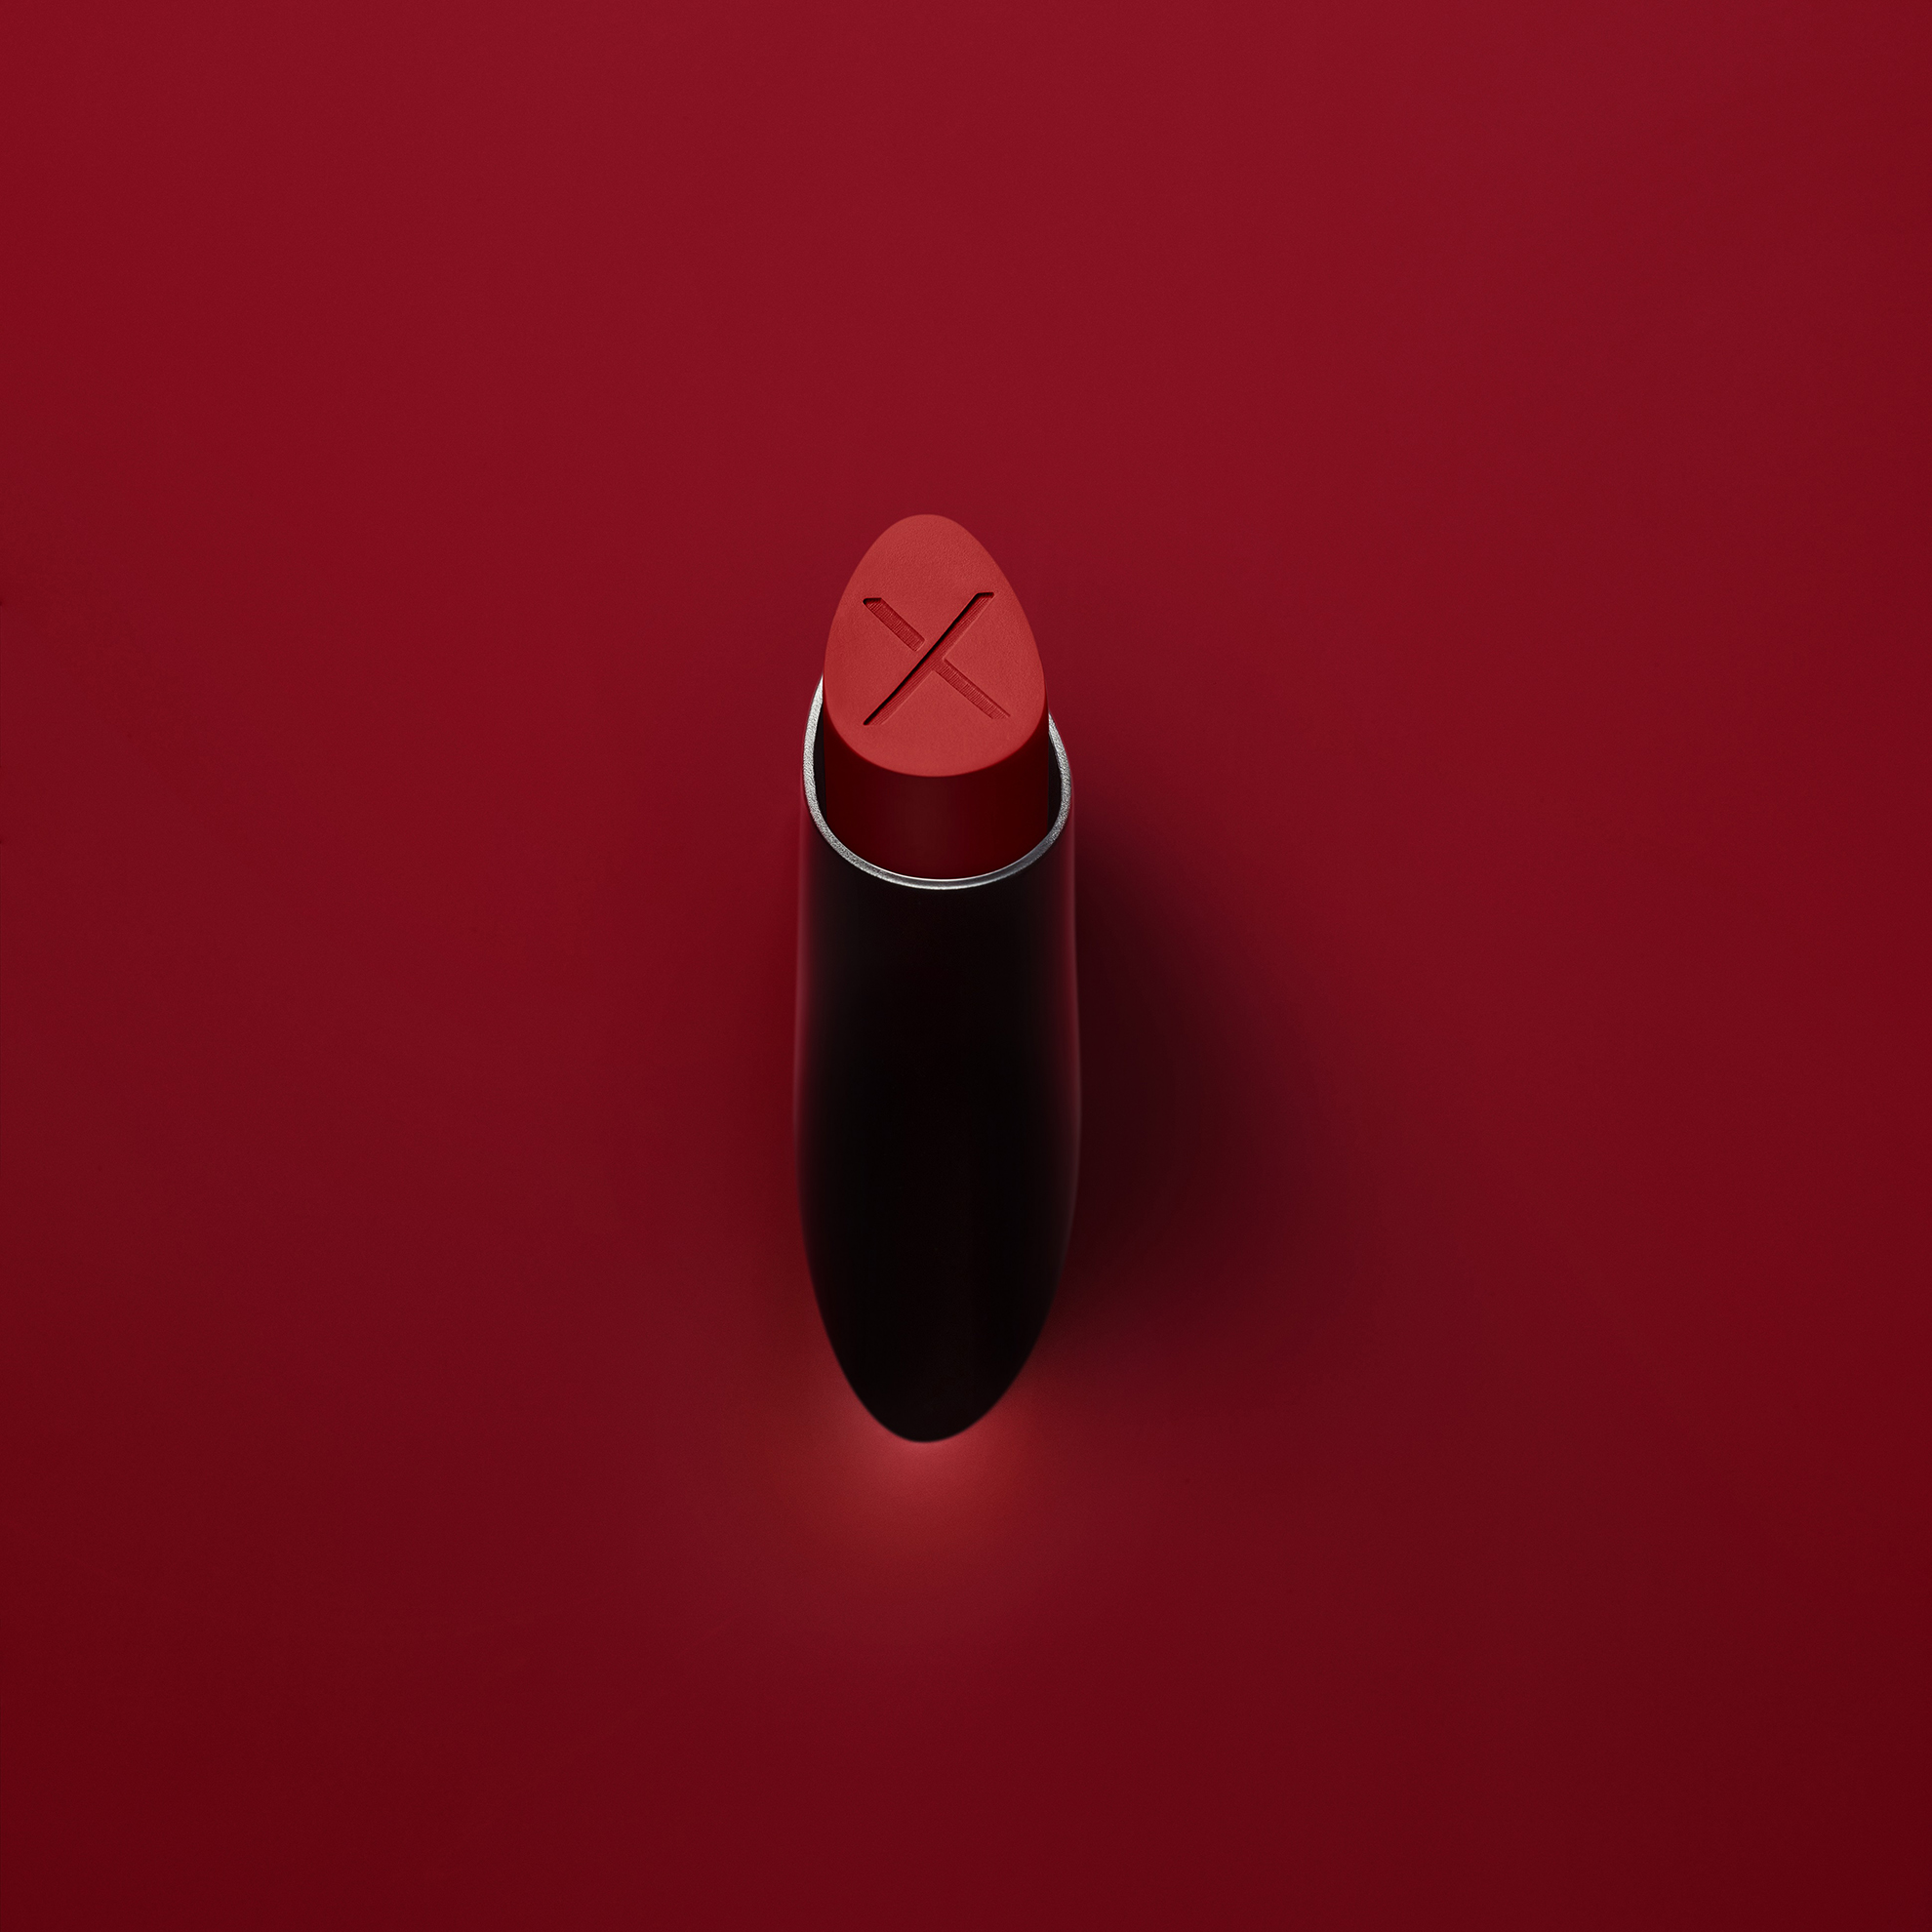 Smashbox Always On Cream Lipstick rossetti waterproof lunga durata - info review recensione prezzo dove acquistare colori swatches